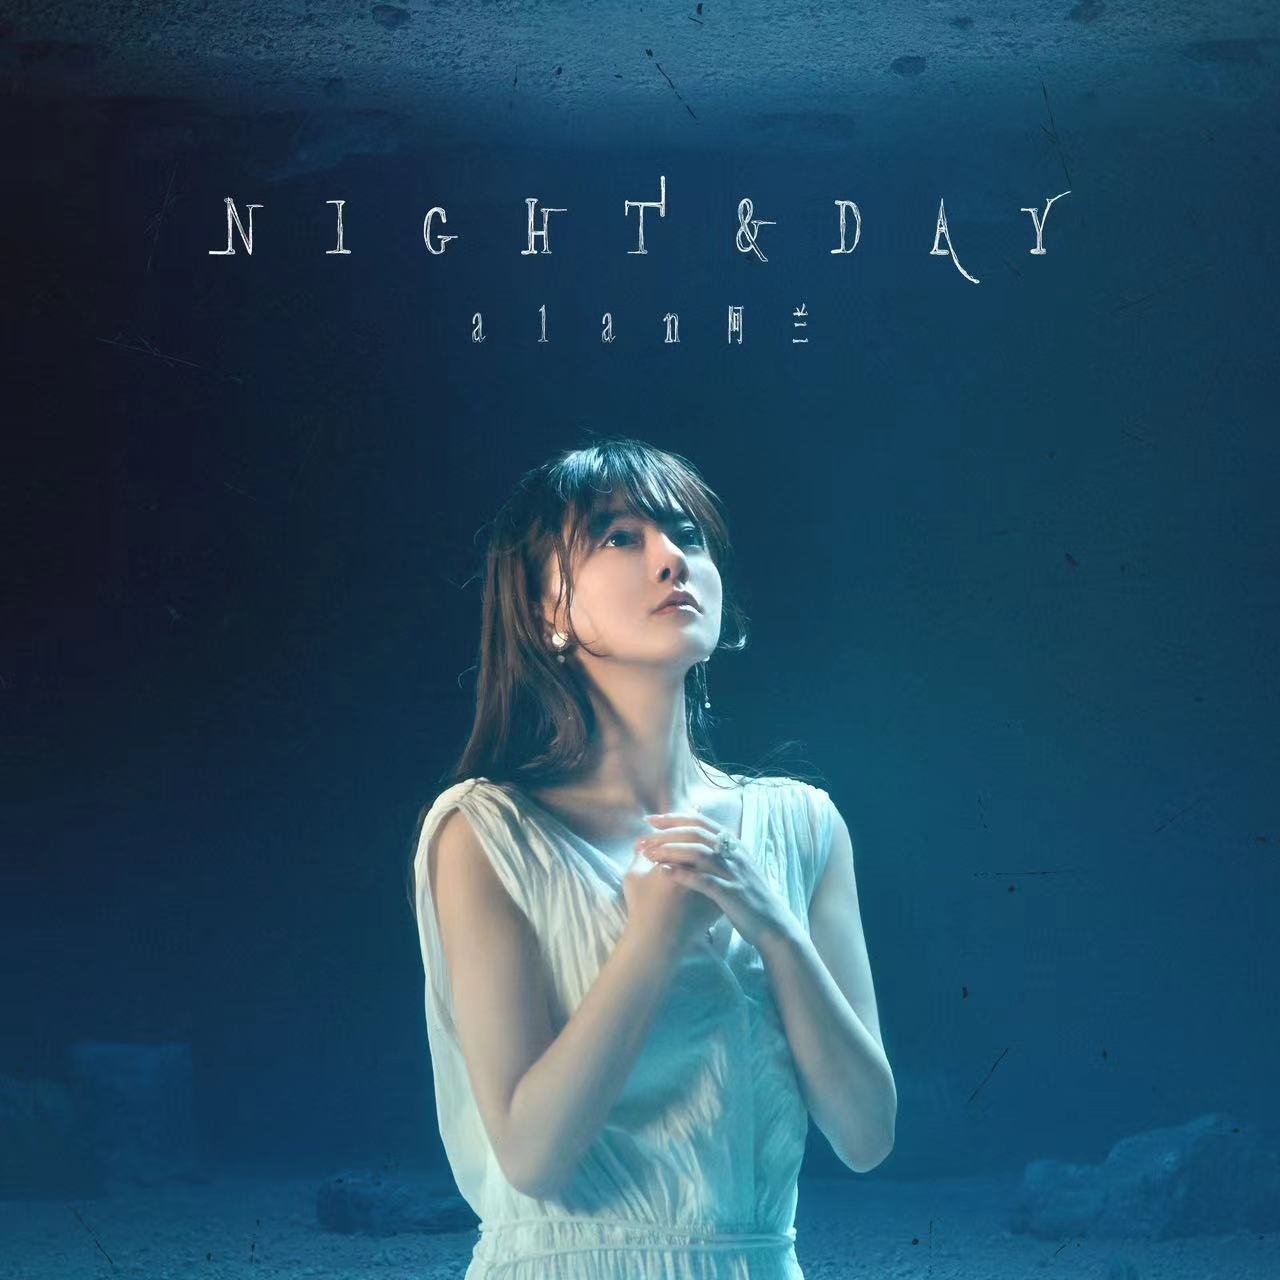 阿兰全新日语EP《Night & Day》带来不同以往的人性思考，收录《深爱》、《漫天寄愿》两首日语单曲，将最擅长的抒情吟唱淋漓表达。